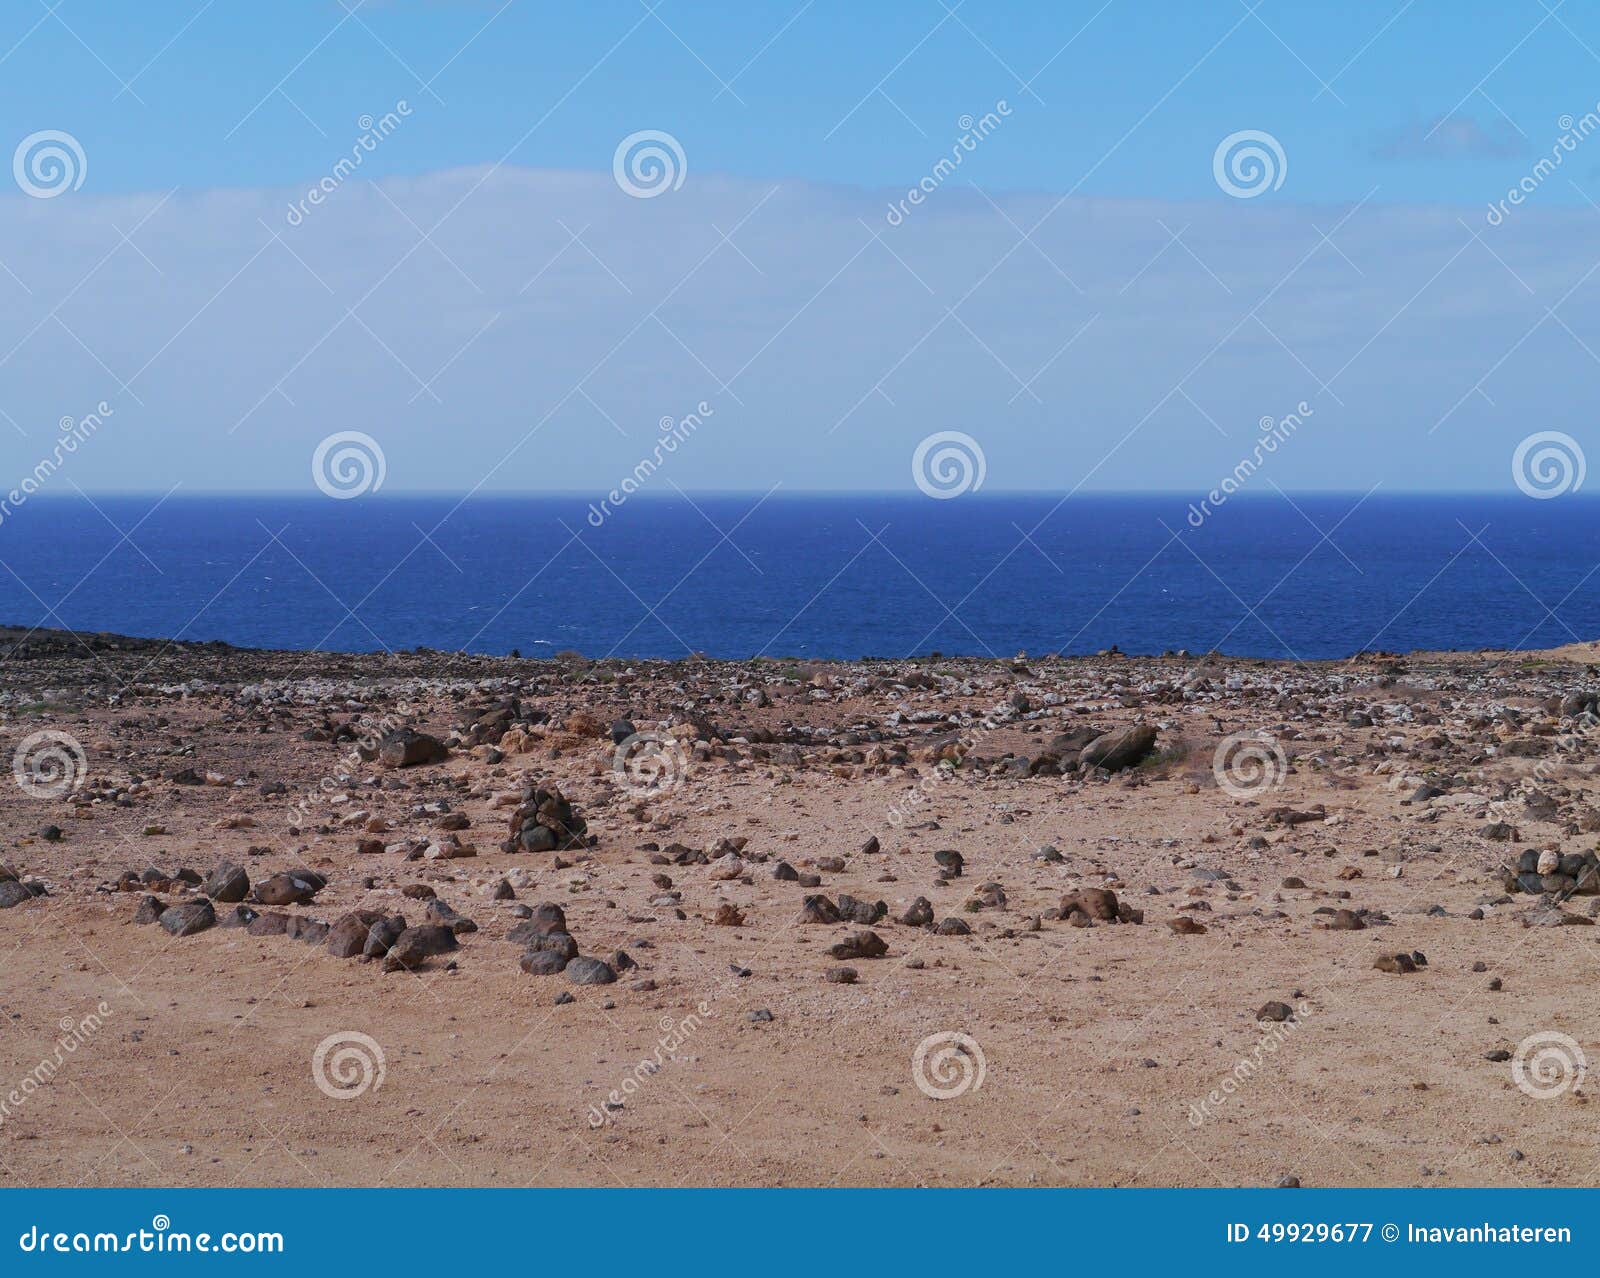 the desert and the atlantic ocean on fuerteventura